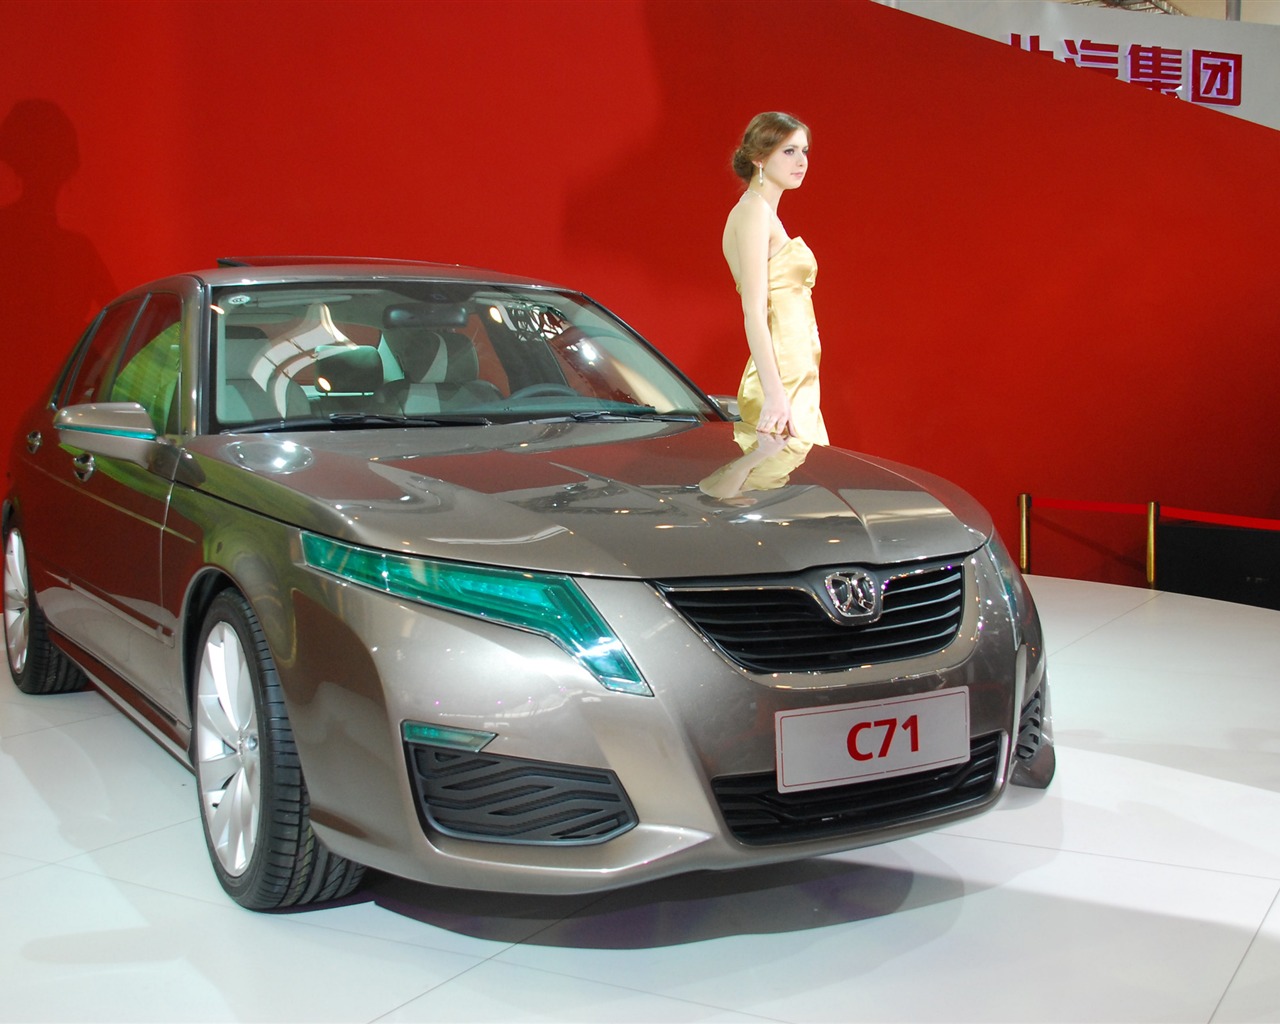 2010 Beijing International Auto Show (1) (z321x123 works) #14 - 1280x1024